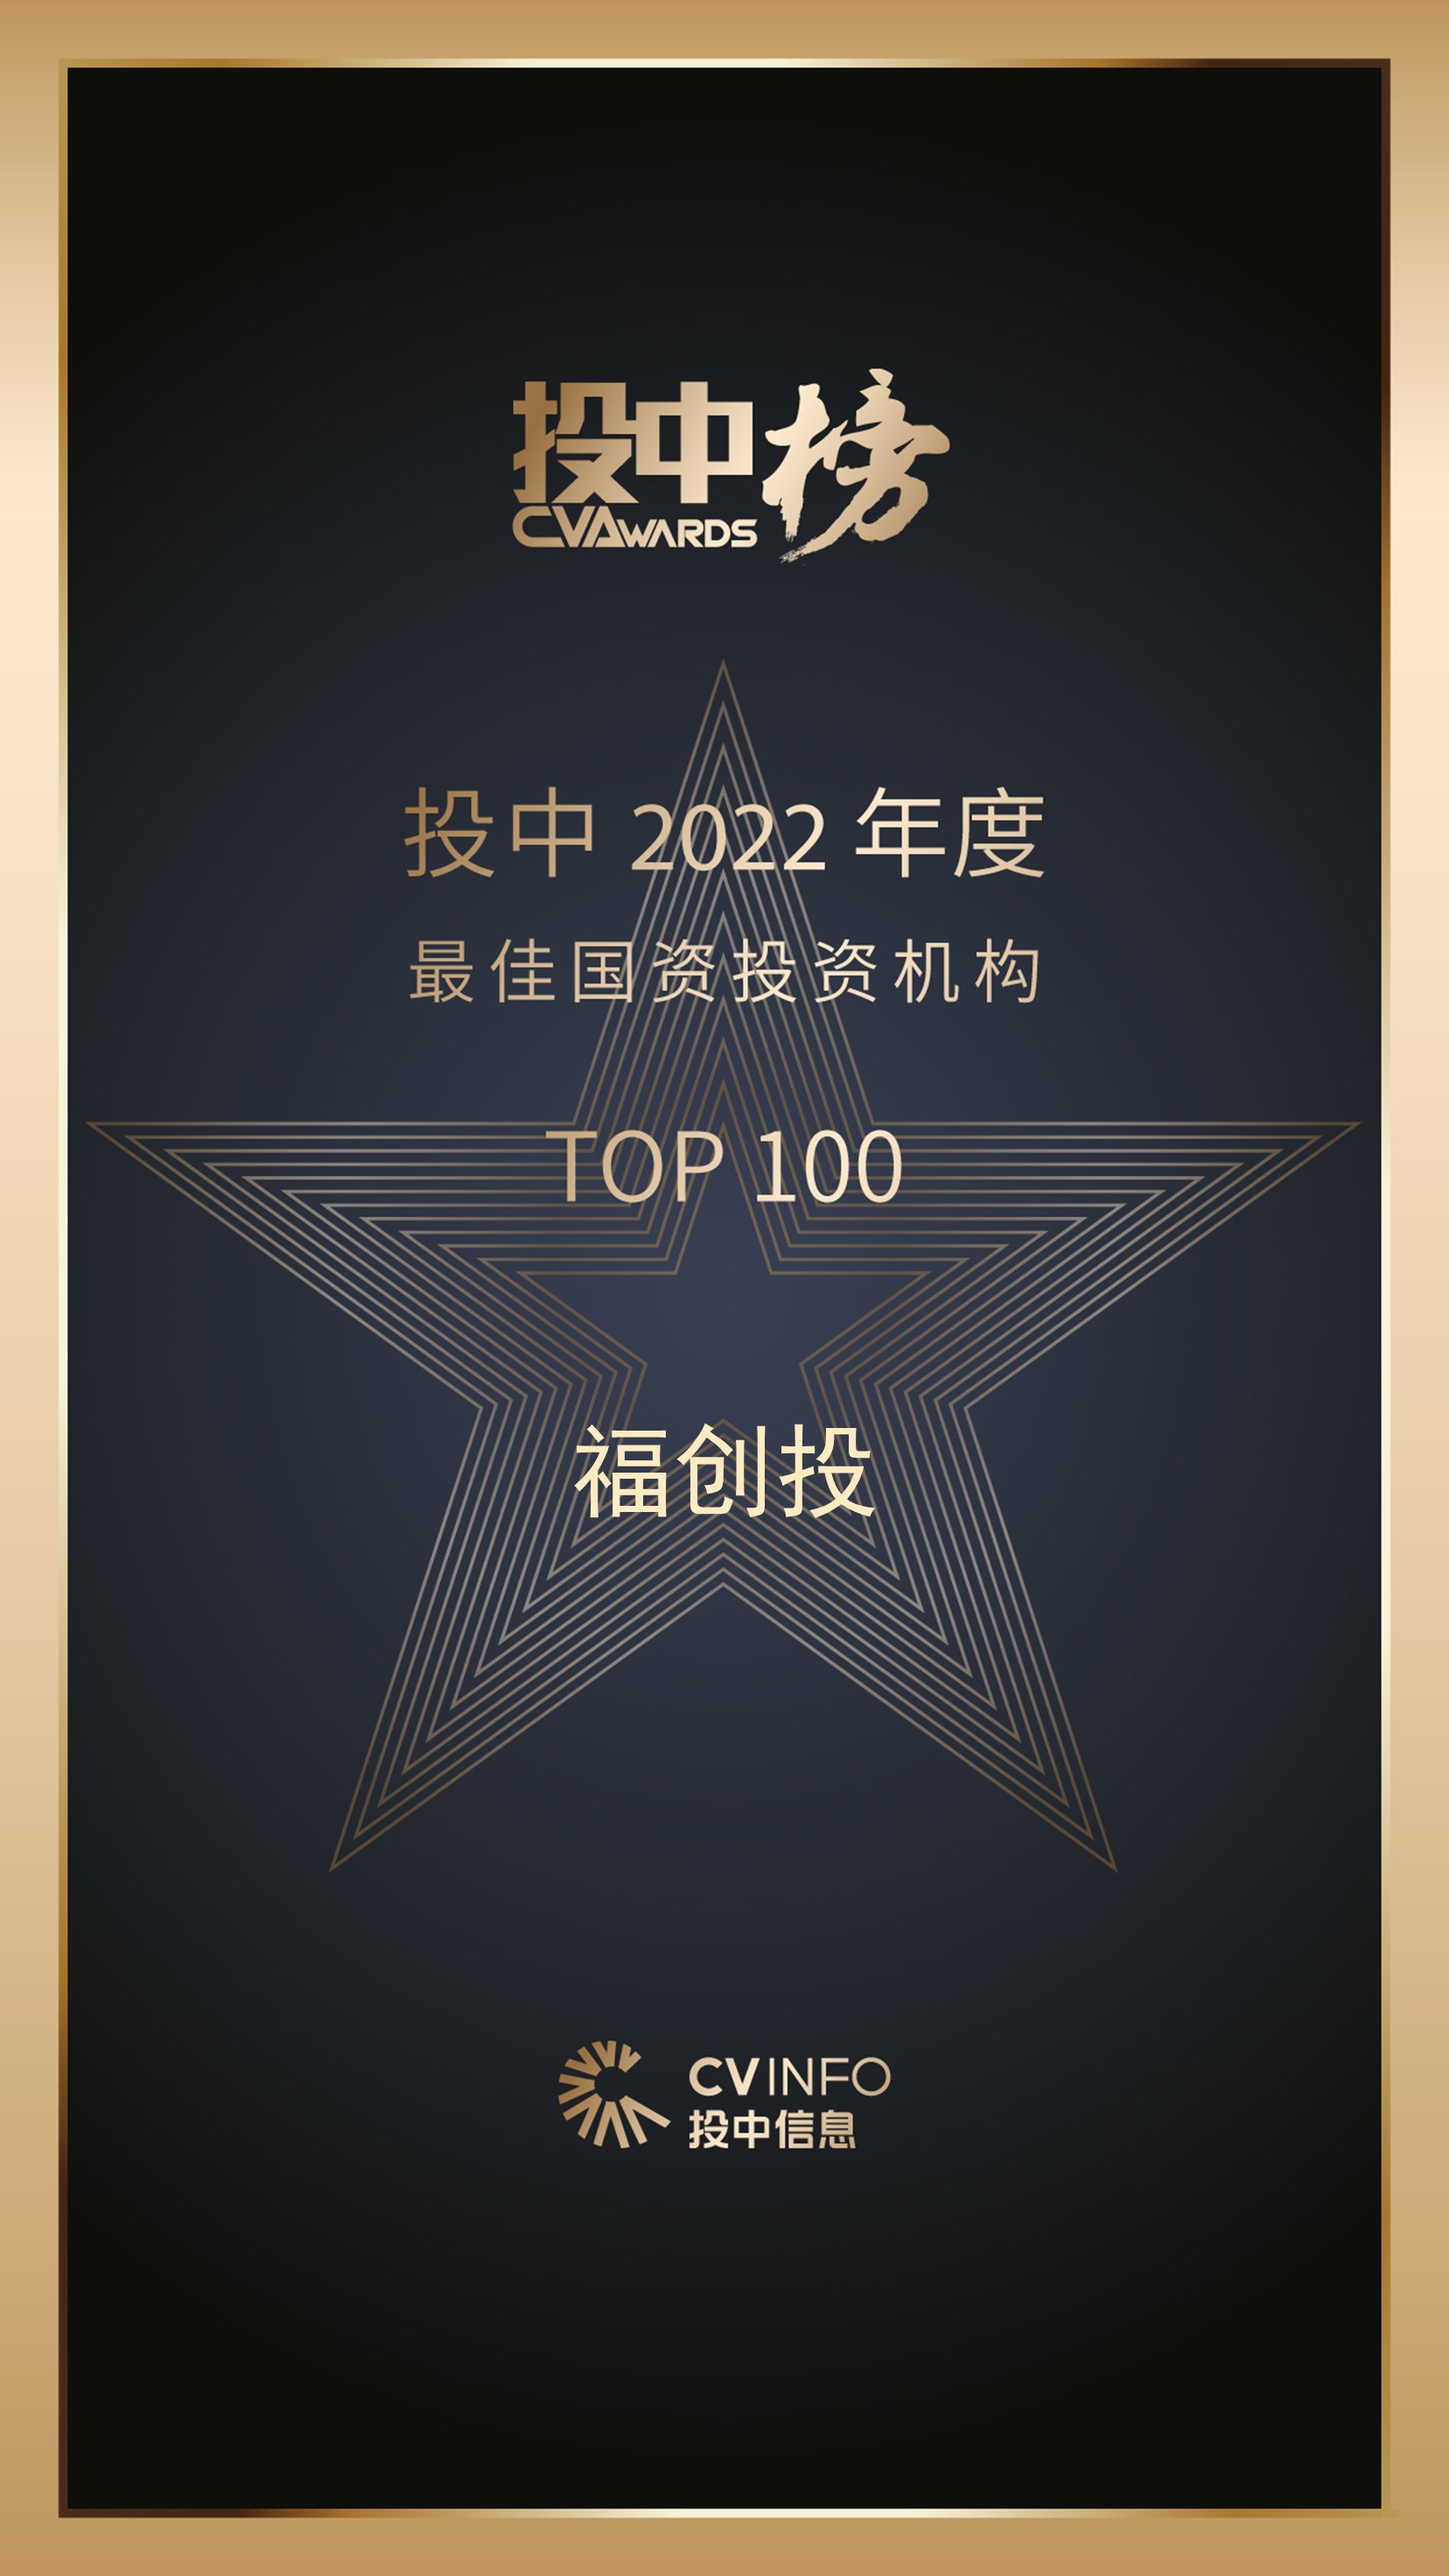 福创投荣登“投中榜·2022年度最佳国资投资机构TOP100”